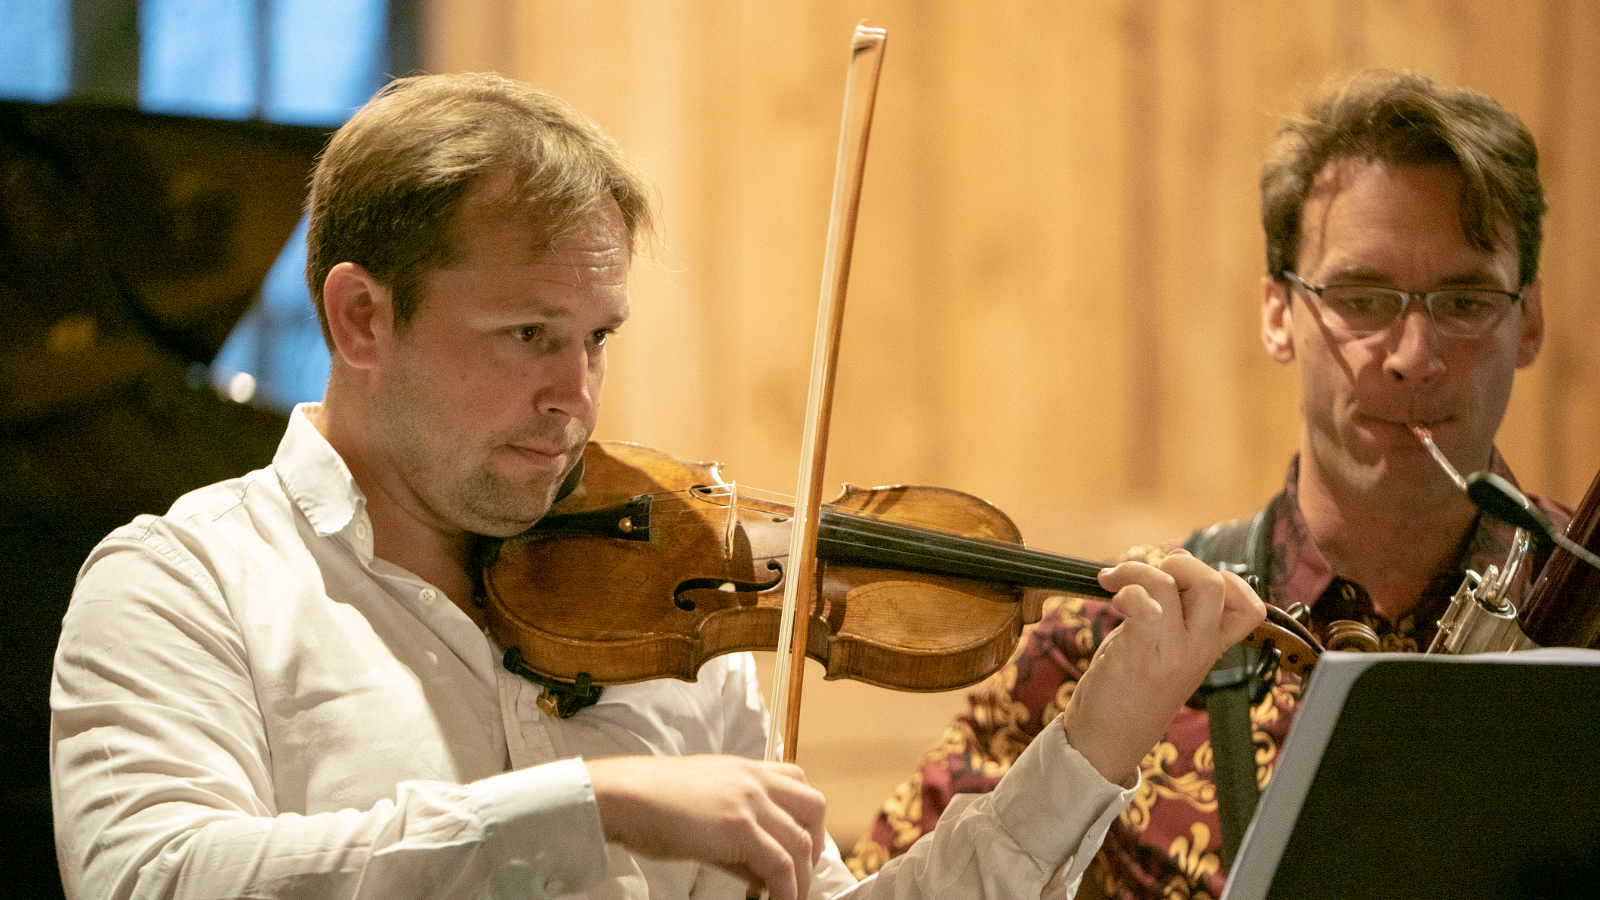 Kuvassa ovat Jukka Merjanen soittamassa viulua ja Bence Boganyi soittamassa fagottia.  Kuvassa näkyvät kasvot ja soittimet.